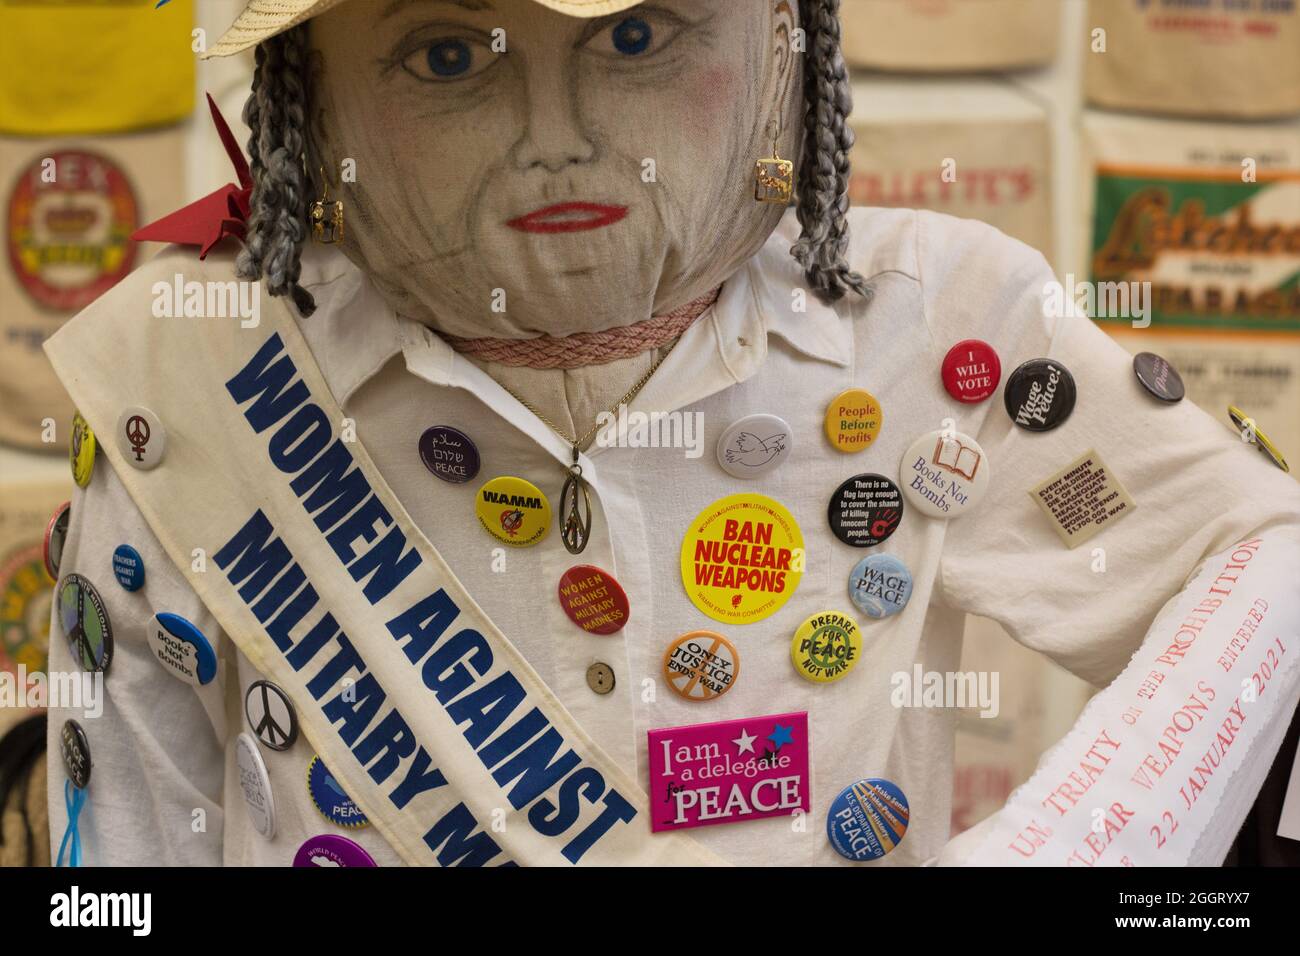 Uno de los participantes en el concurso de scarecrow retrata a una activista anti-guerra, de Pepper Pepperwolf. Foto de stock